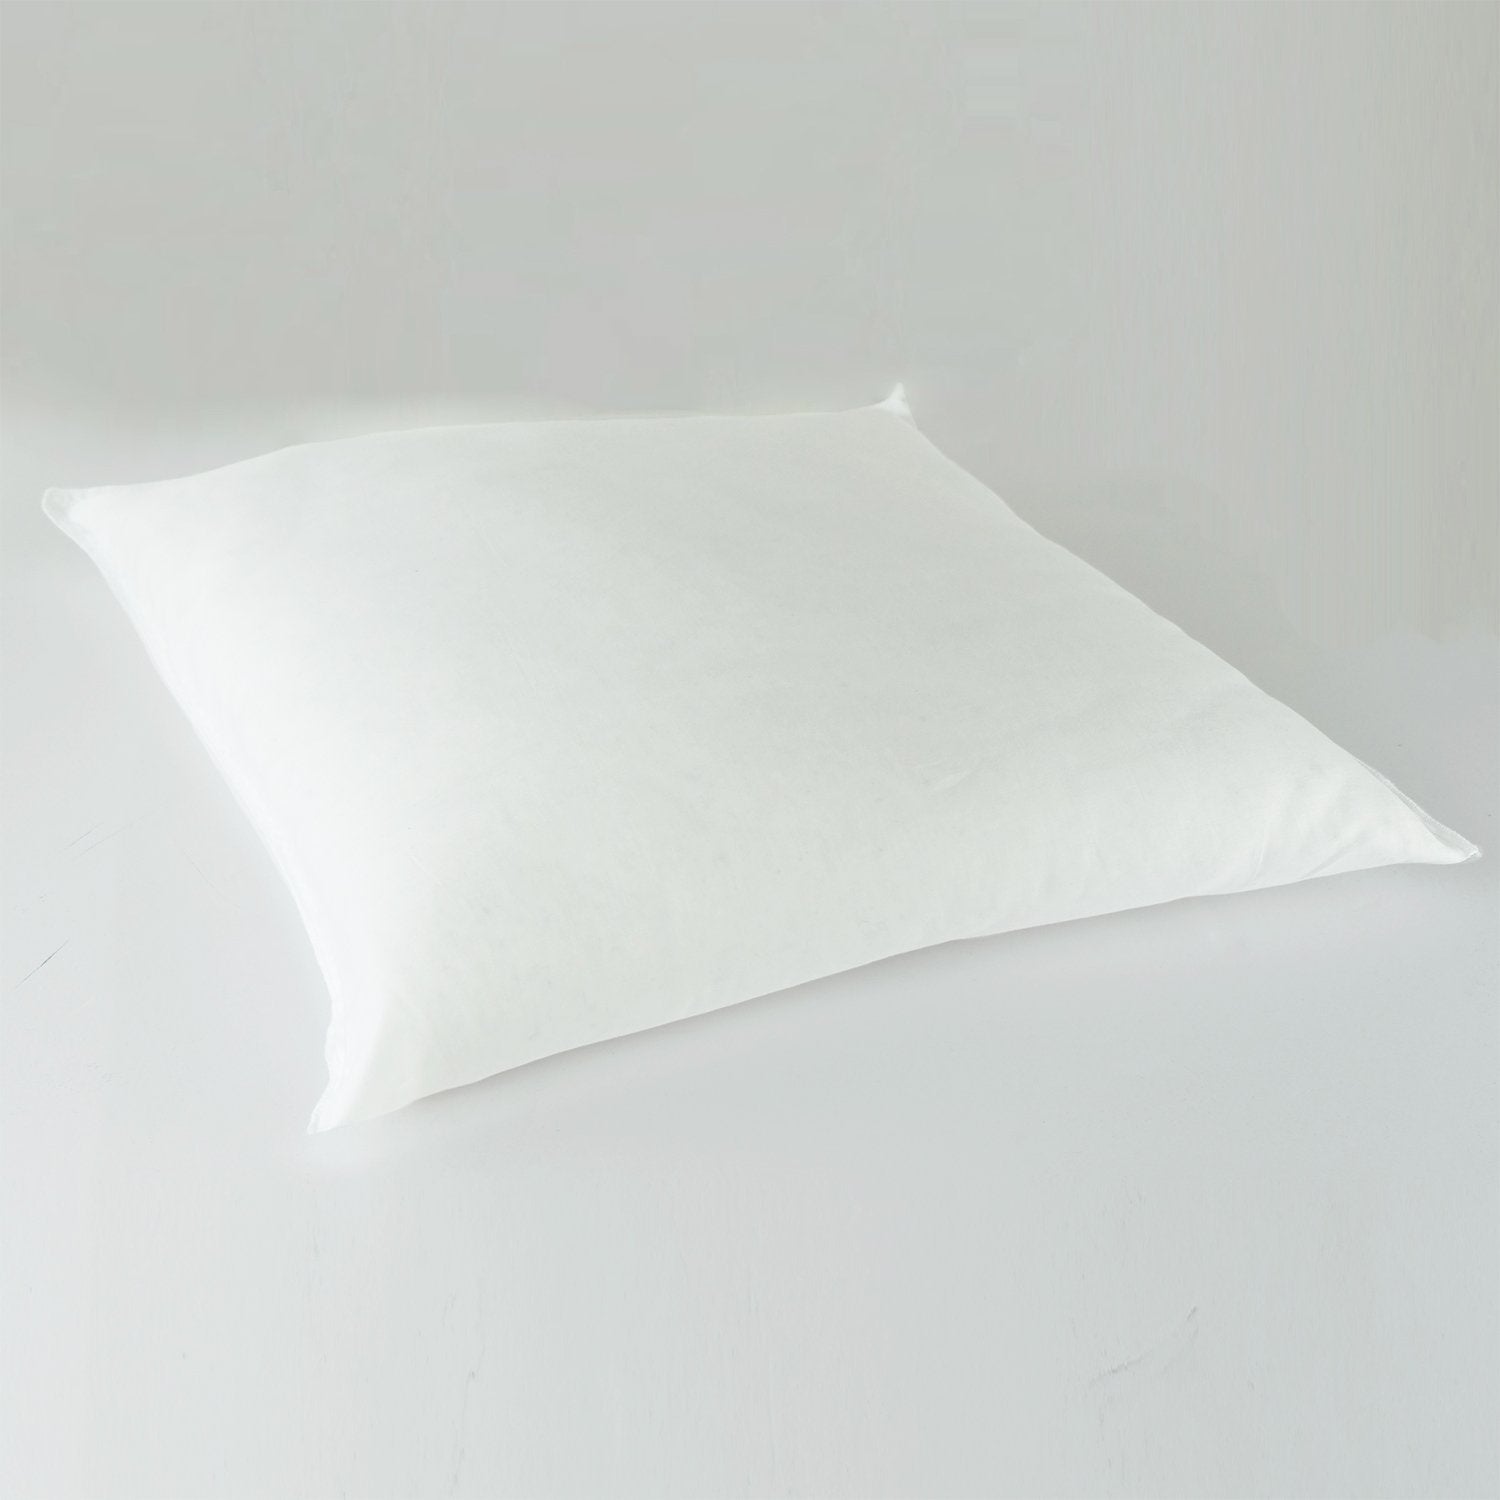 J-Life Kanji Red Zabuton Floor Pillow_Pillows & Shams_Zabuton Floor Pillows_100% Cotton_Reversible_Handmade